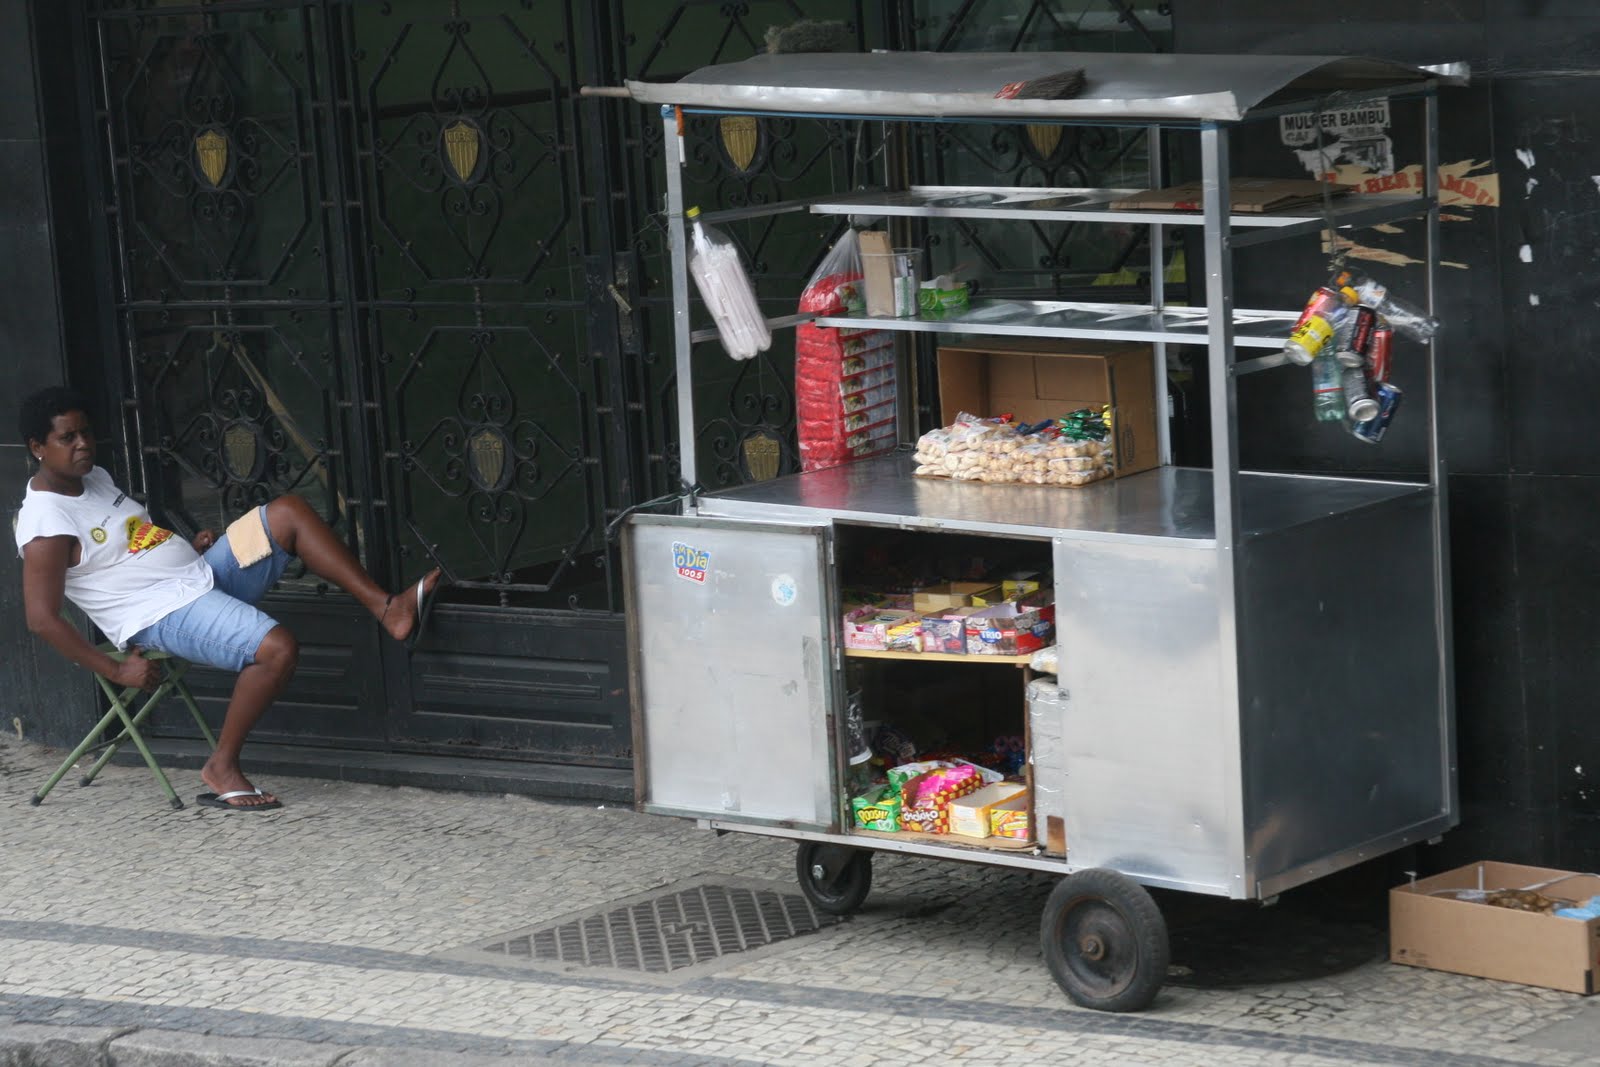 Street vendor, Rio de Janeiro, Brazil